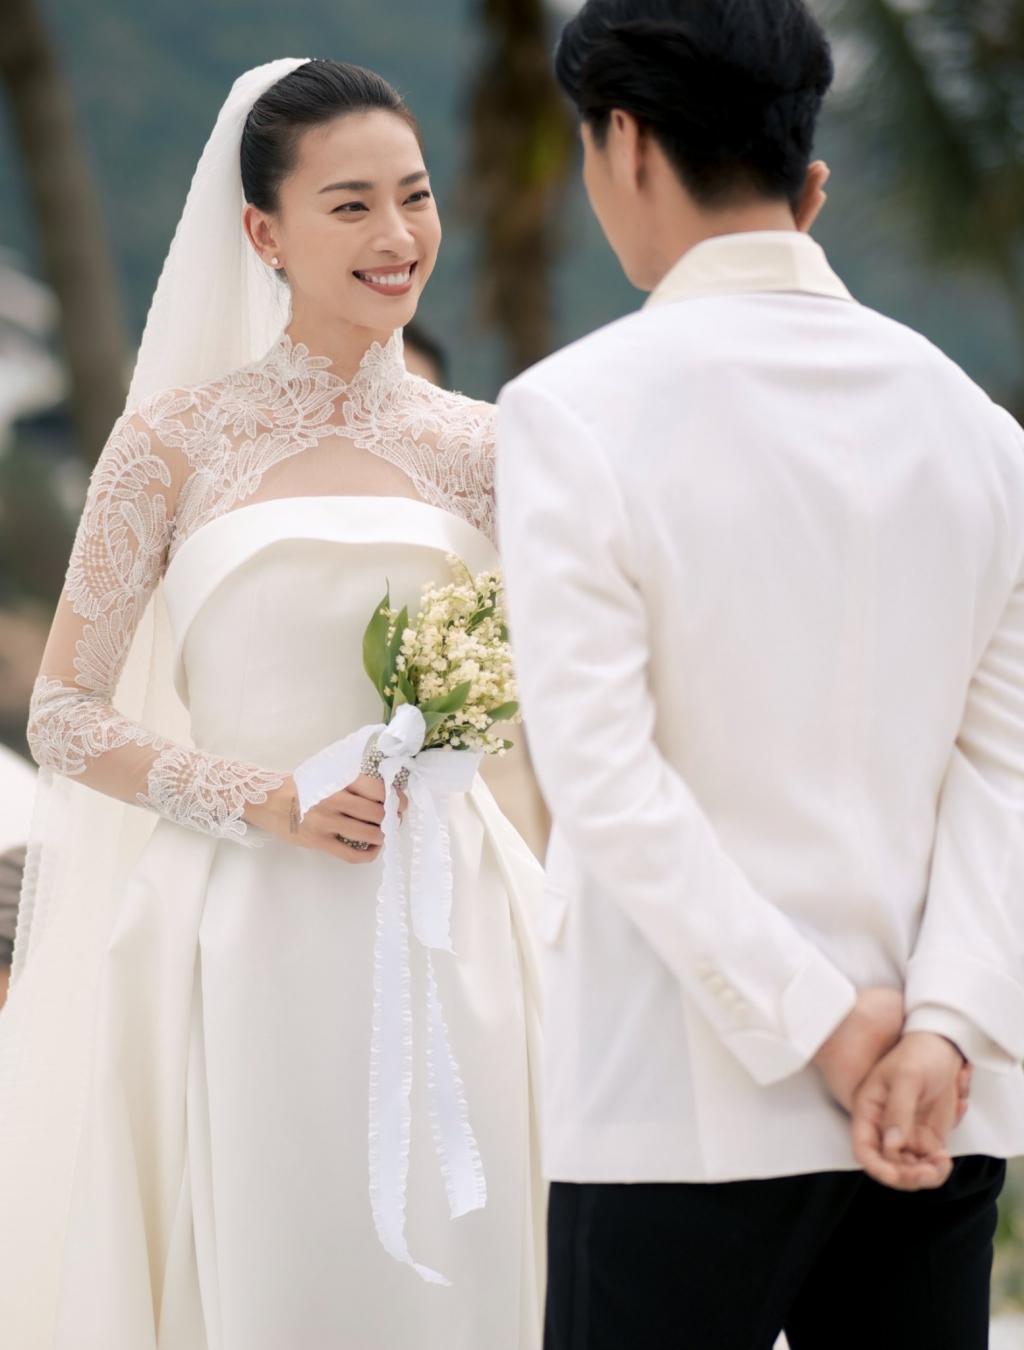 Tung ảnh cưới đẹp như mơ, Ngô Thanh Vân nhắn gửi ông xã: Sẵn sàng làm